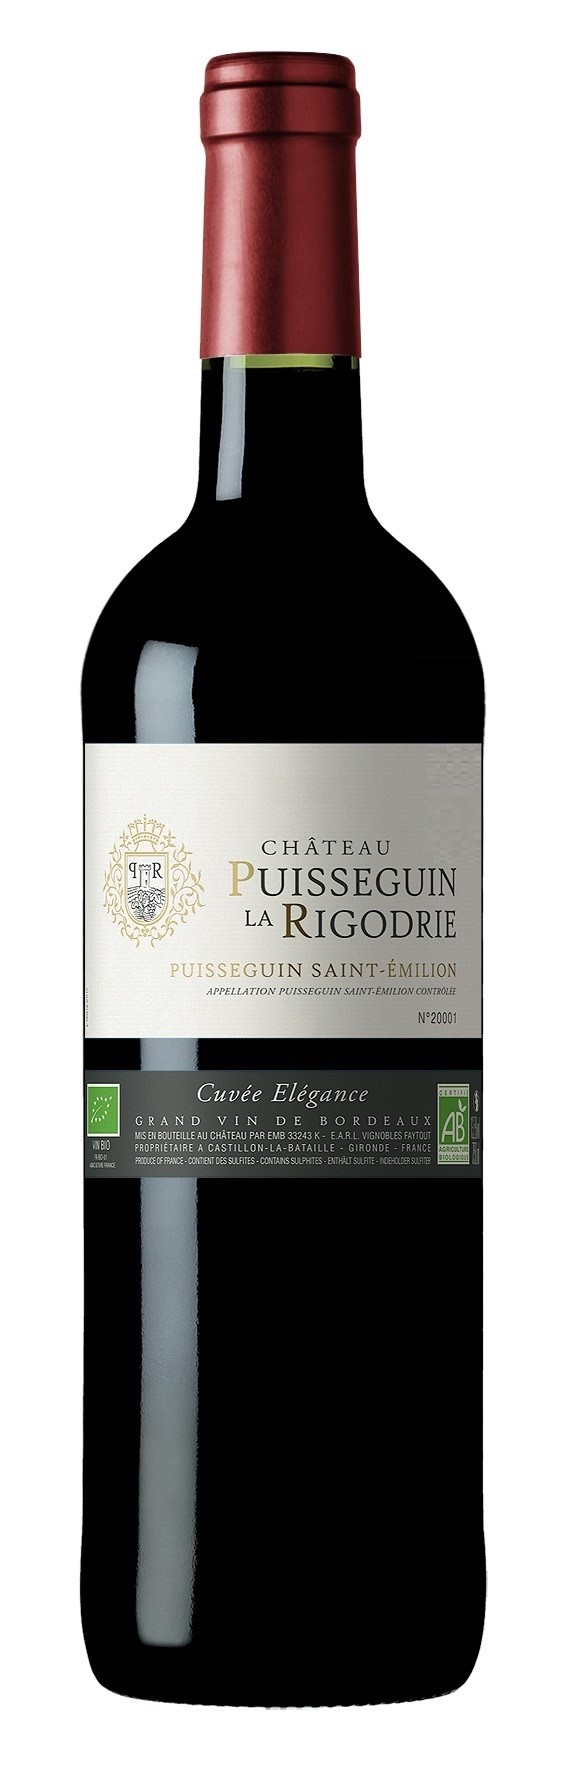 Château Puisseguin La Rigodrie Cuvée élégance - Vignobles Audy